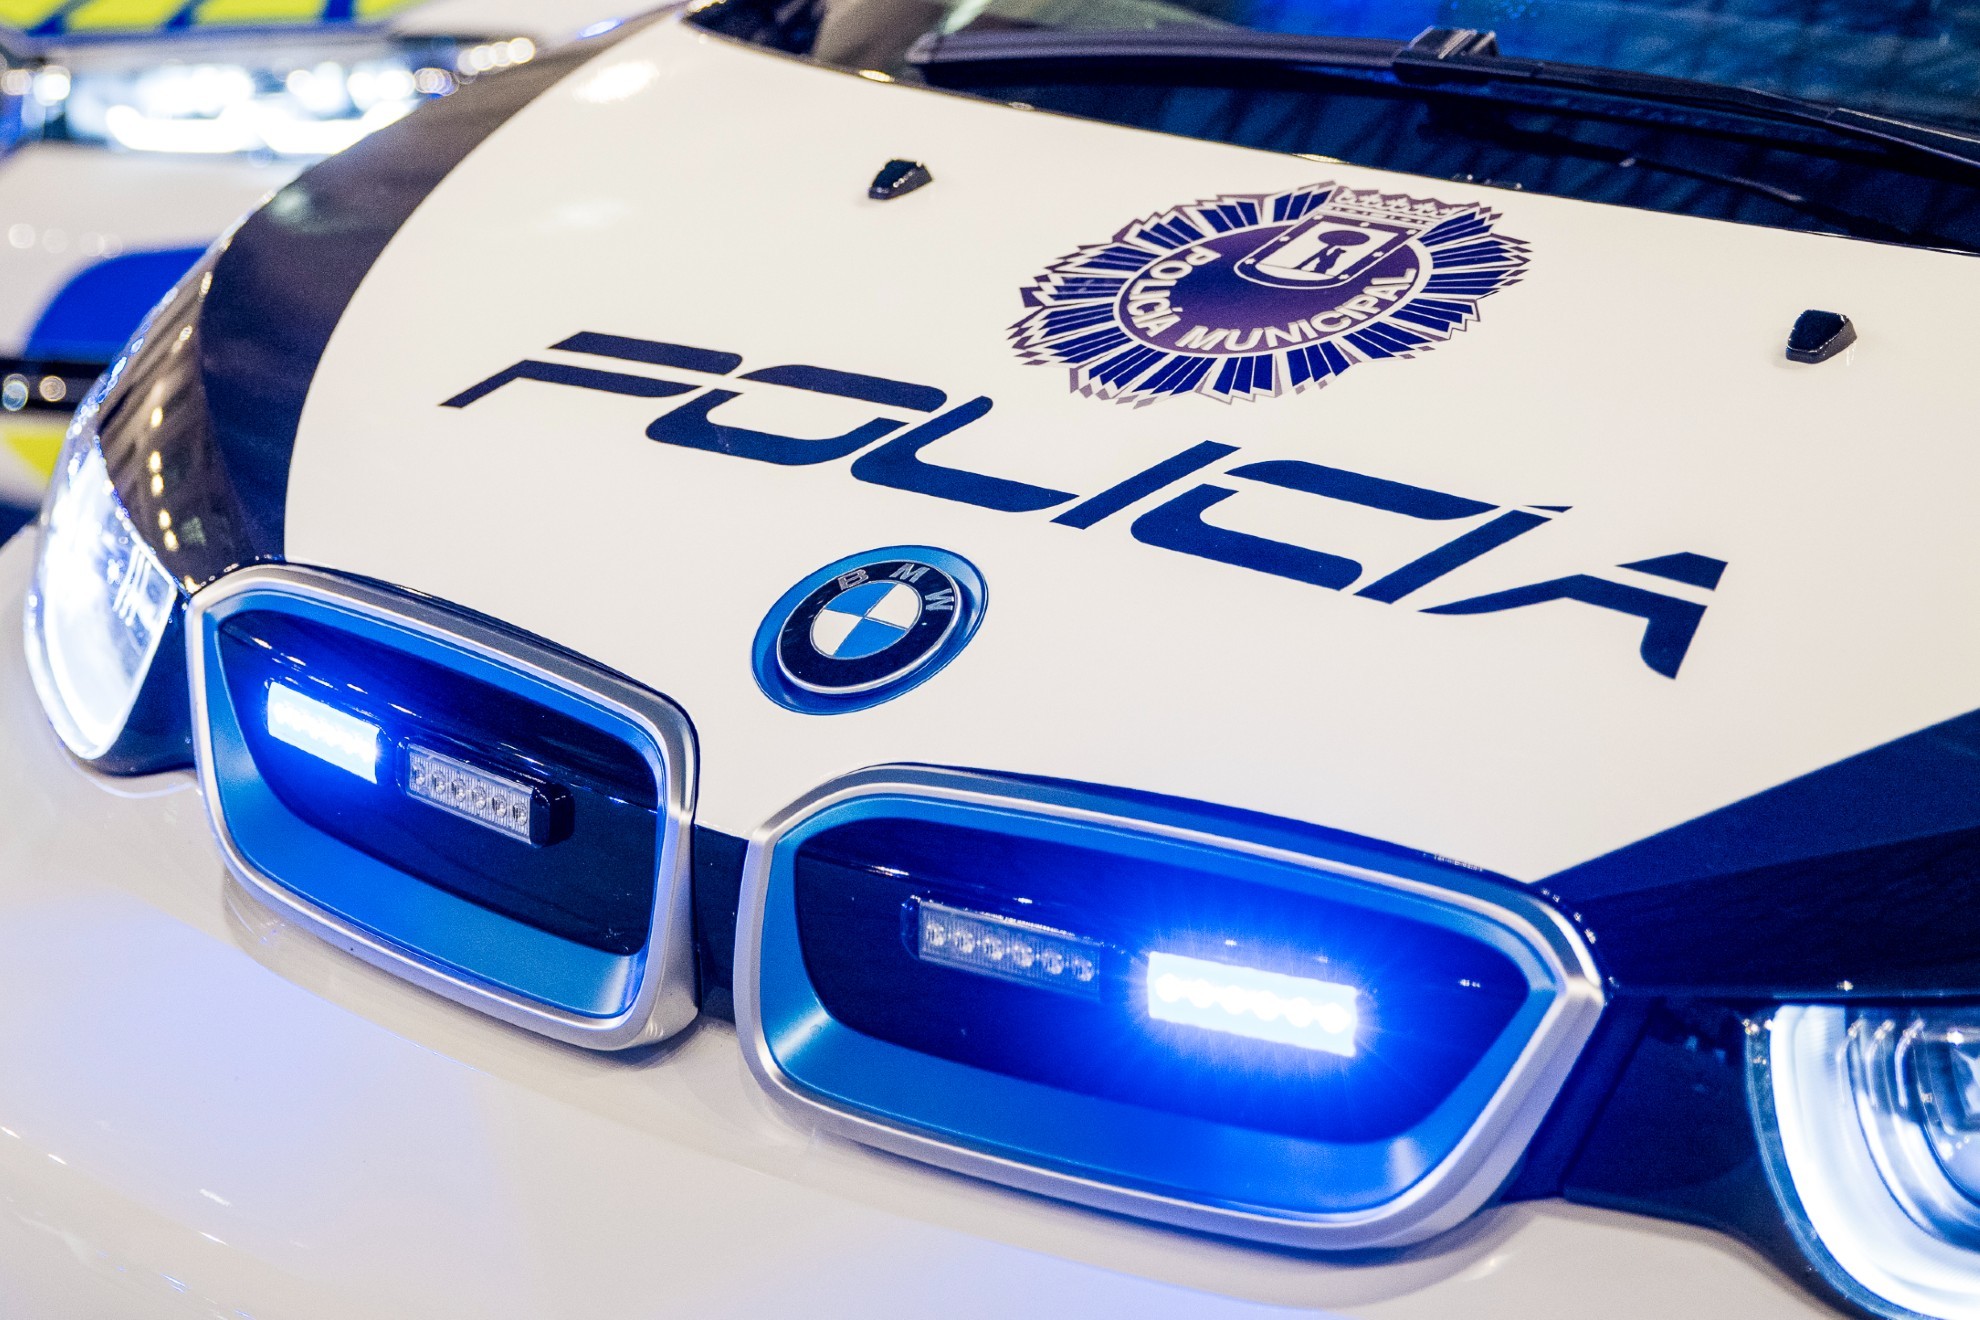 Policia municipal - BMW - 169 unidades - BMW i3 - BMW Serie 2 Active Tourer -